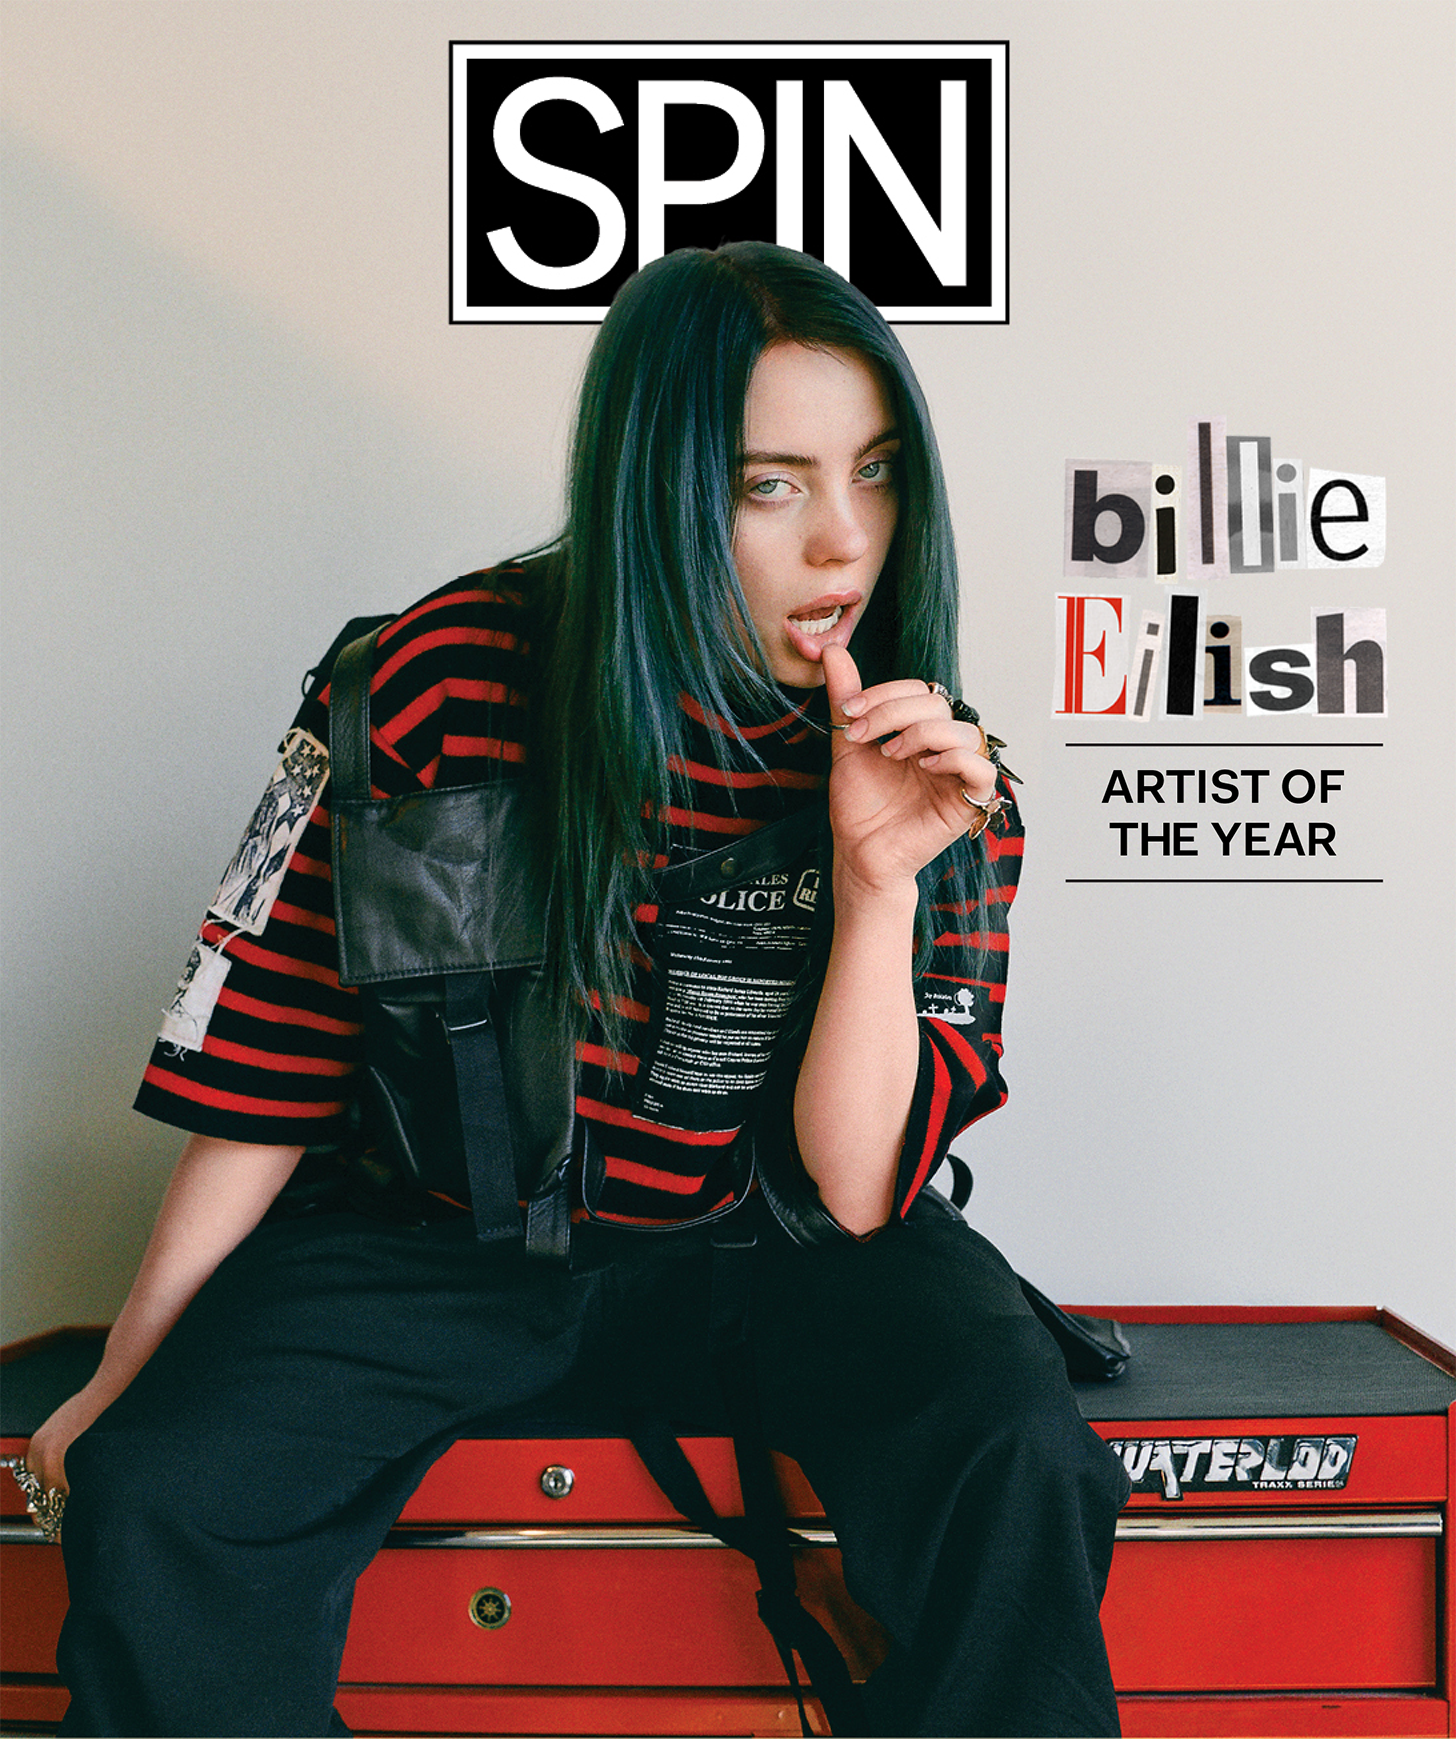 Artist of the Year: Billie Eilish